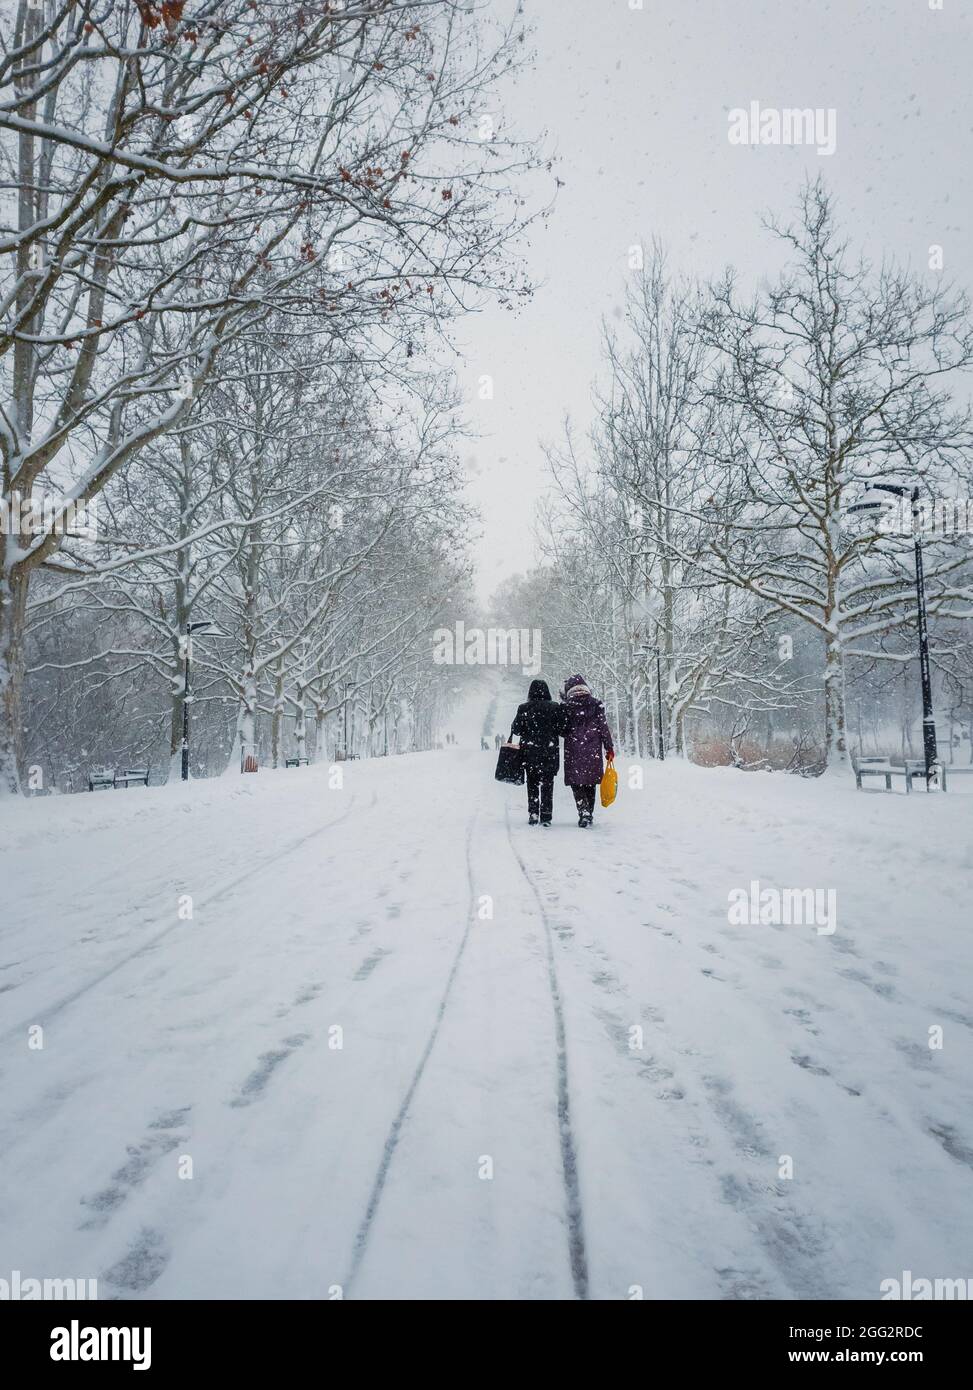 Zwei Frauen mittleren Alters, die Beutel tragen, gehen durch den Schneefall entlang der Gasse im Winterpark. Wunderbare Schneeszene auf der Straße. Kalt s Stockfoto